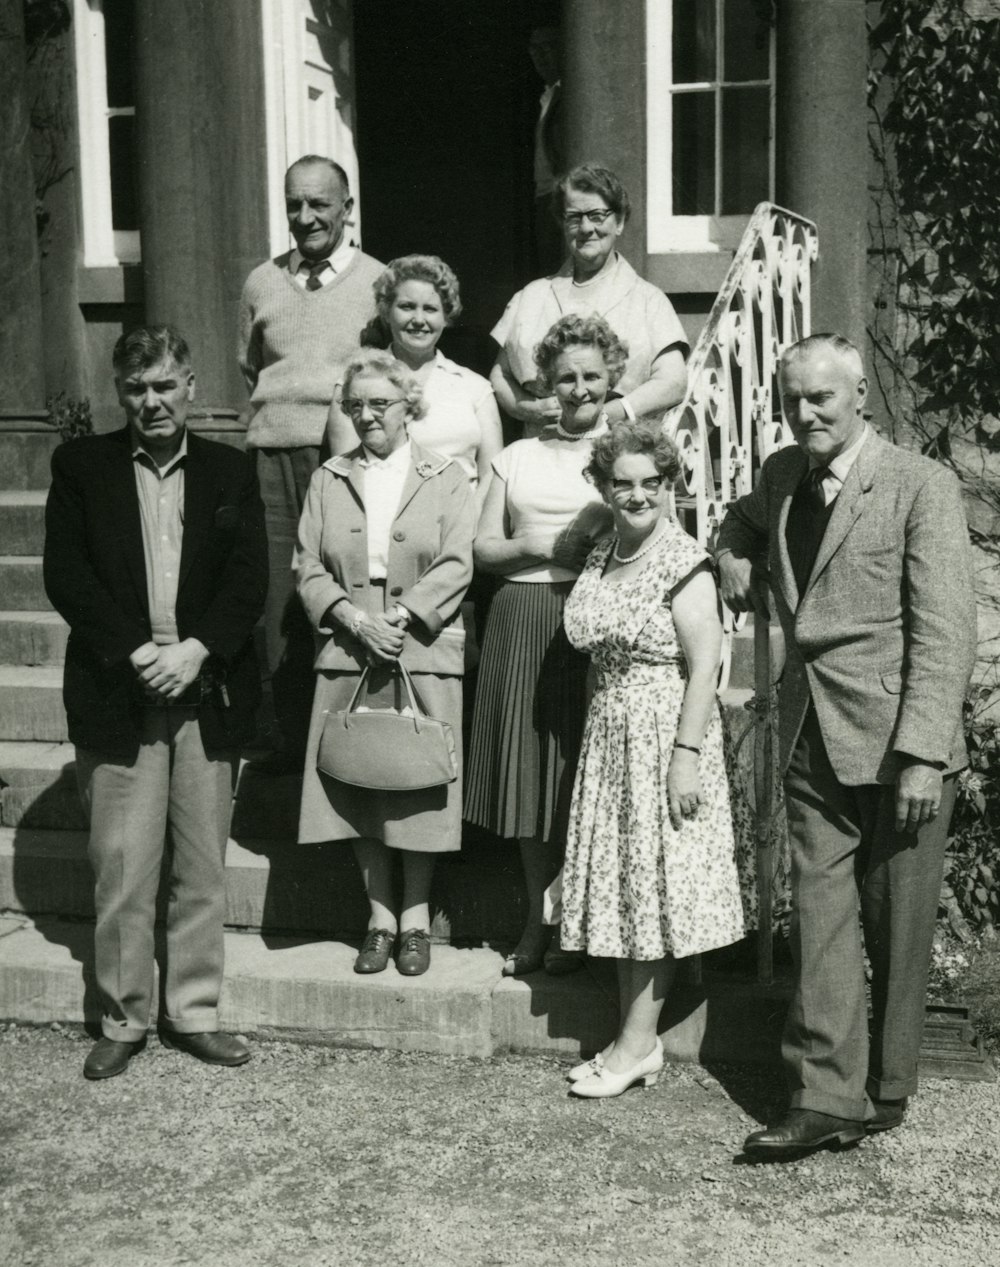 잔디밭에 서 있는 가족의 그레이스케일 사진